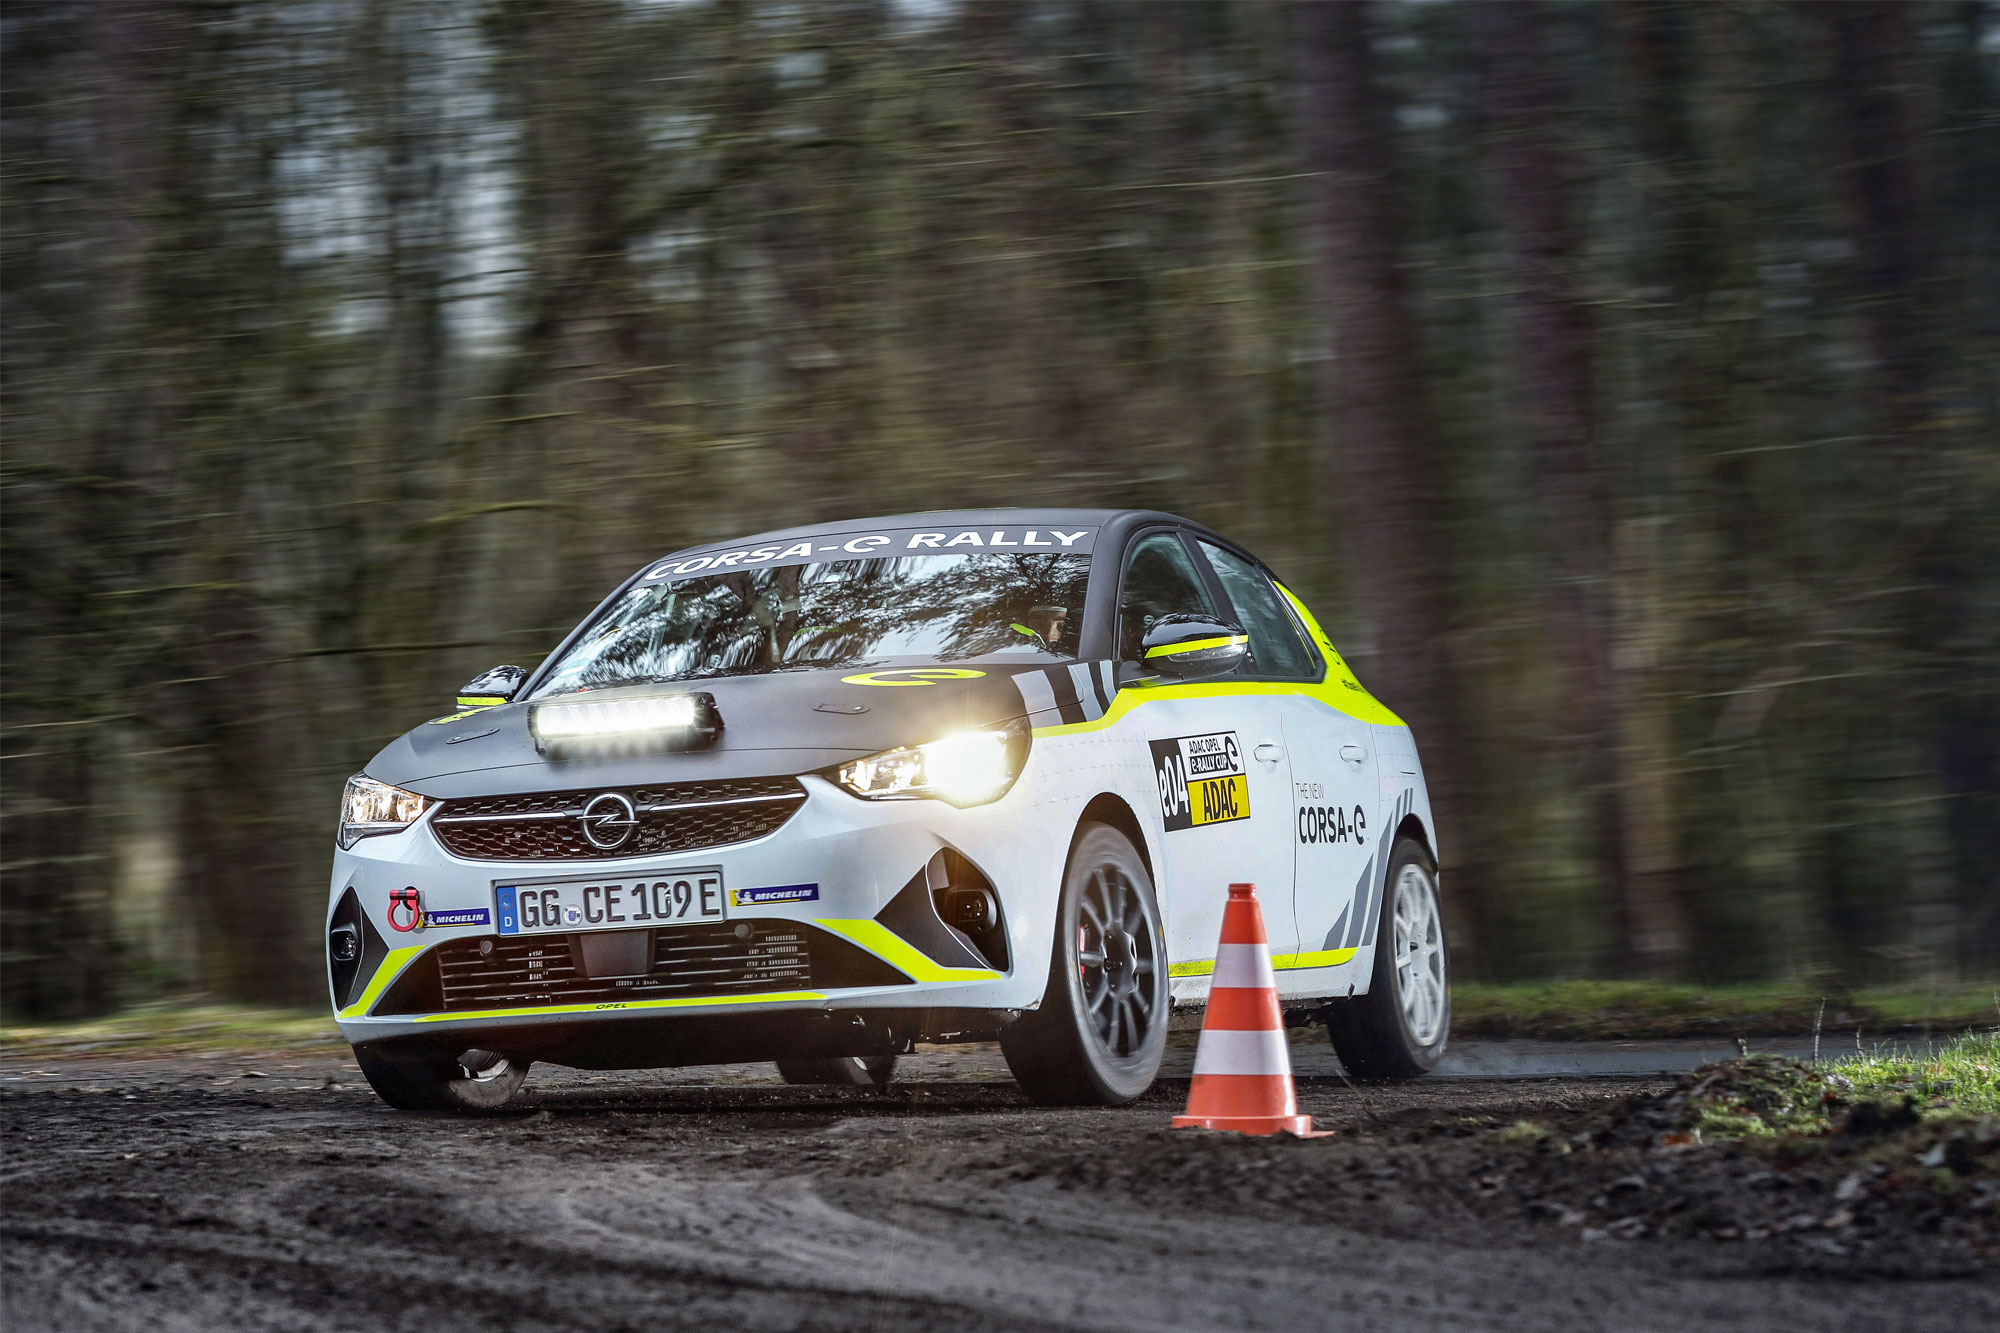 Ορίστηκε το πρόγραμμα αγώνων του ADAC Opel e-Rally Cup